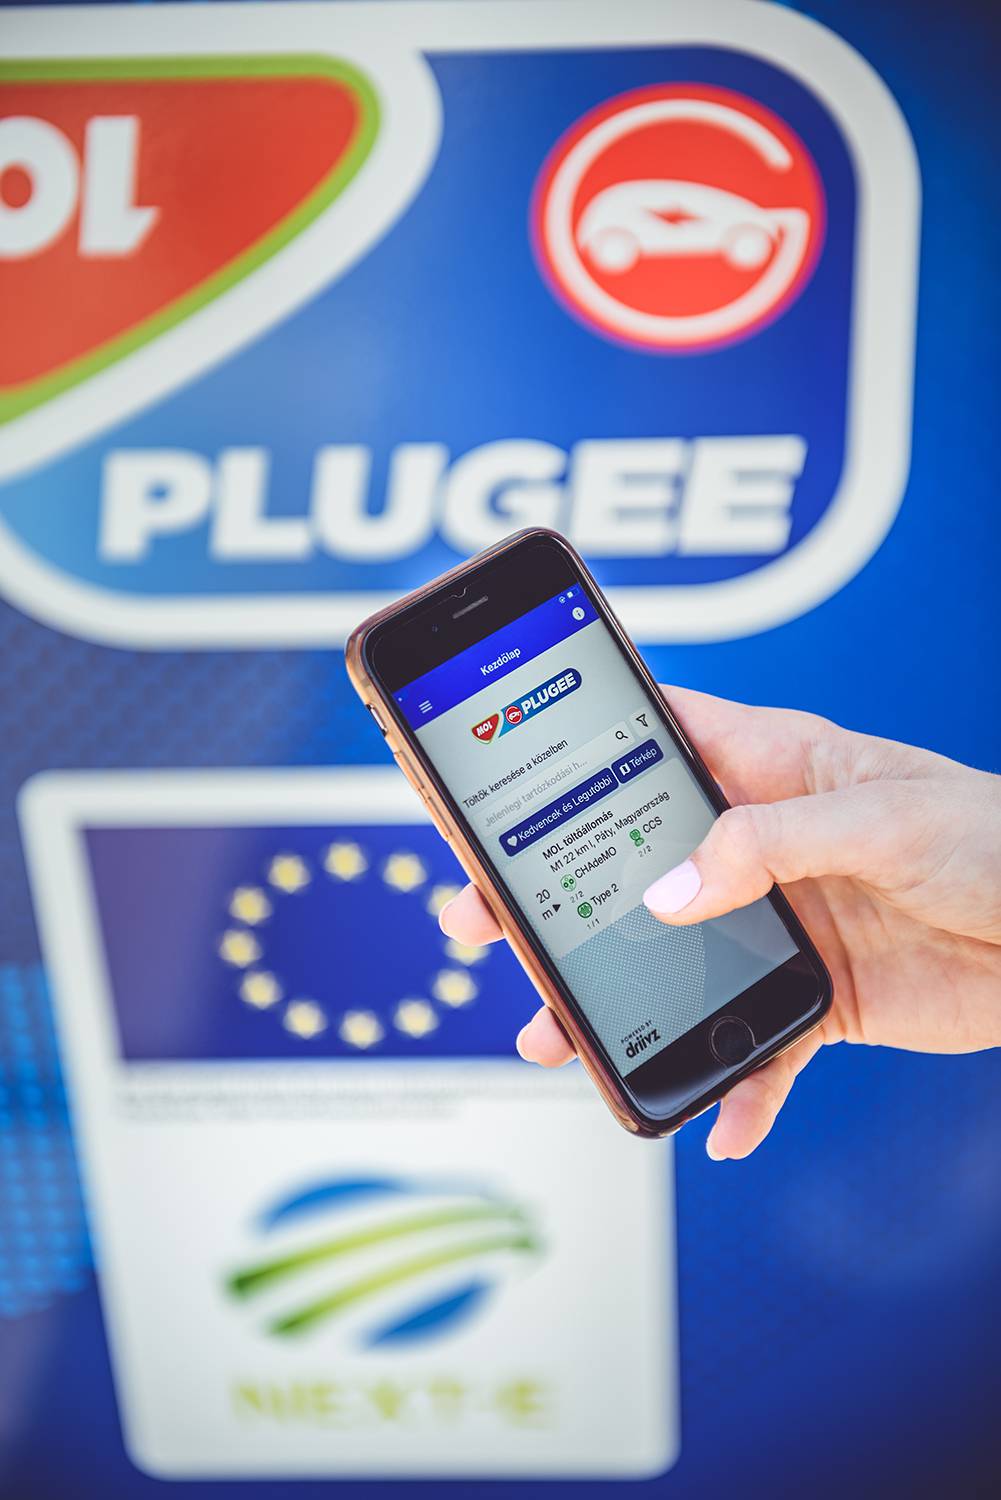 MOL Plugee - aplikacija punjenje električnih vozila od sada u Hrvatskoj na Tifonu